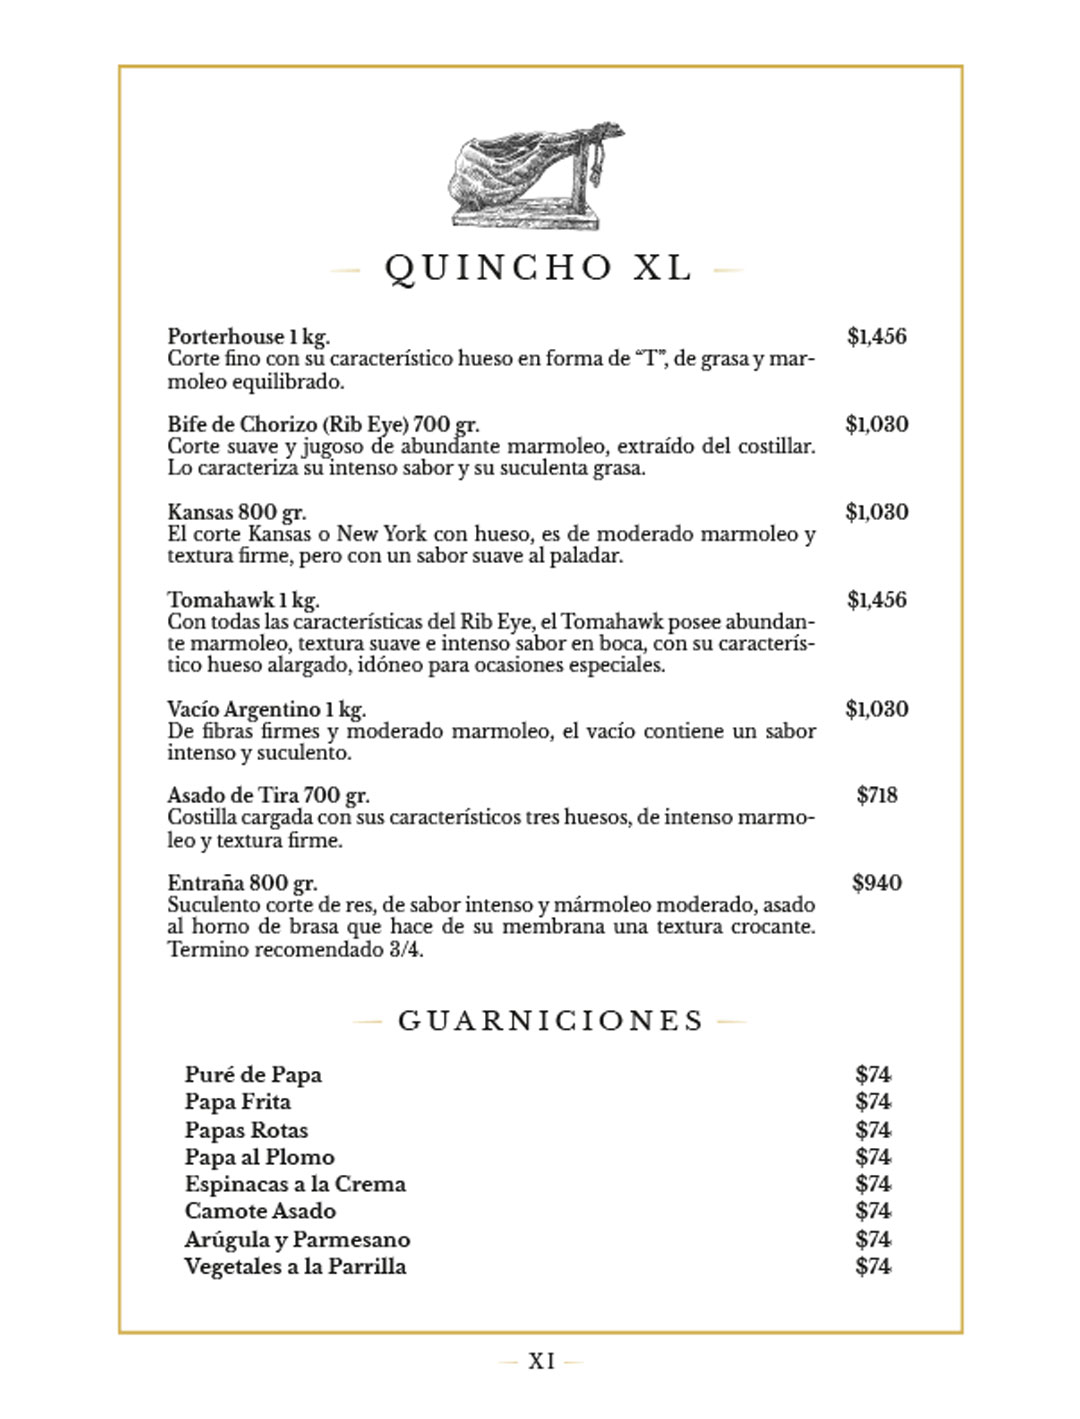 XI-Quincho-XL